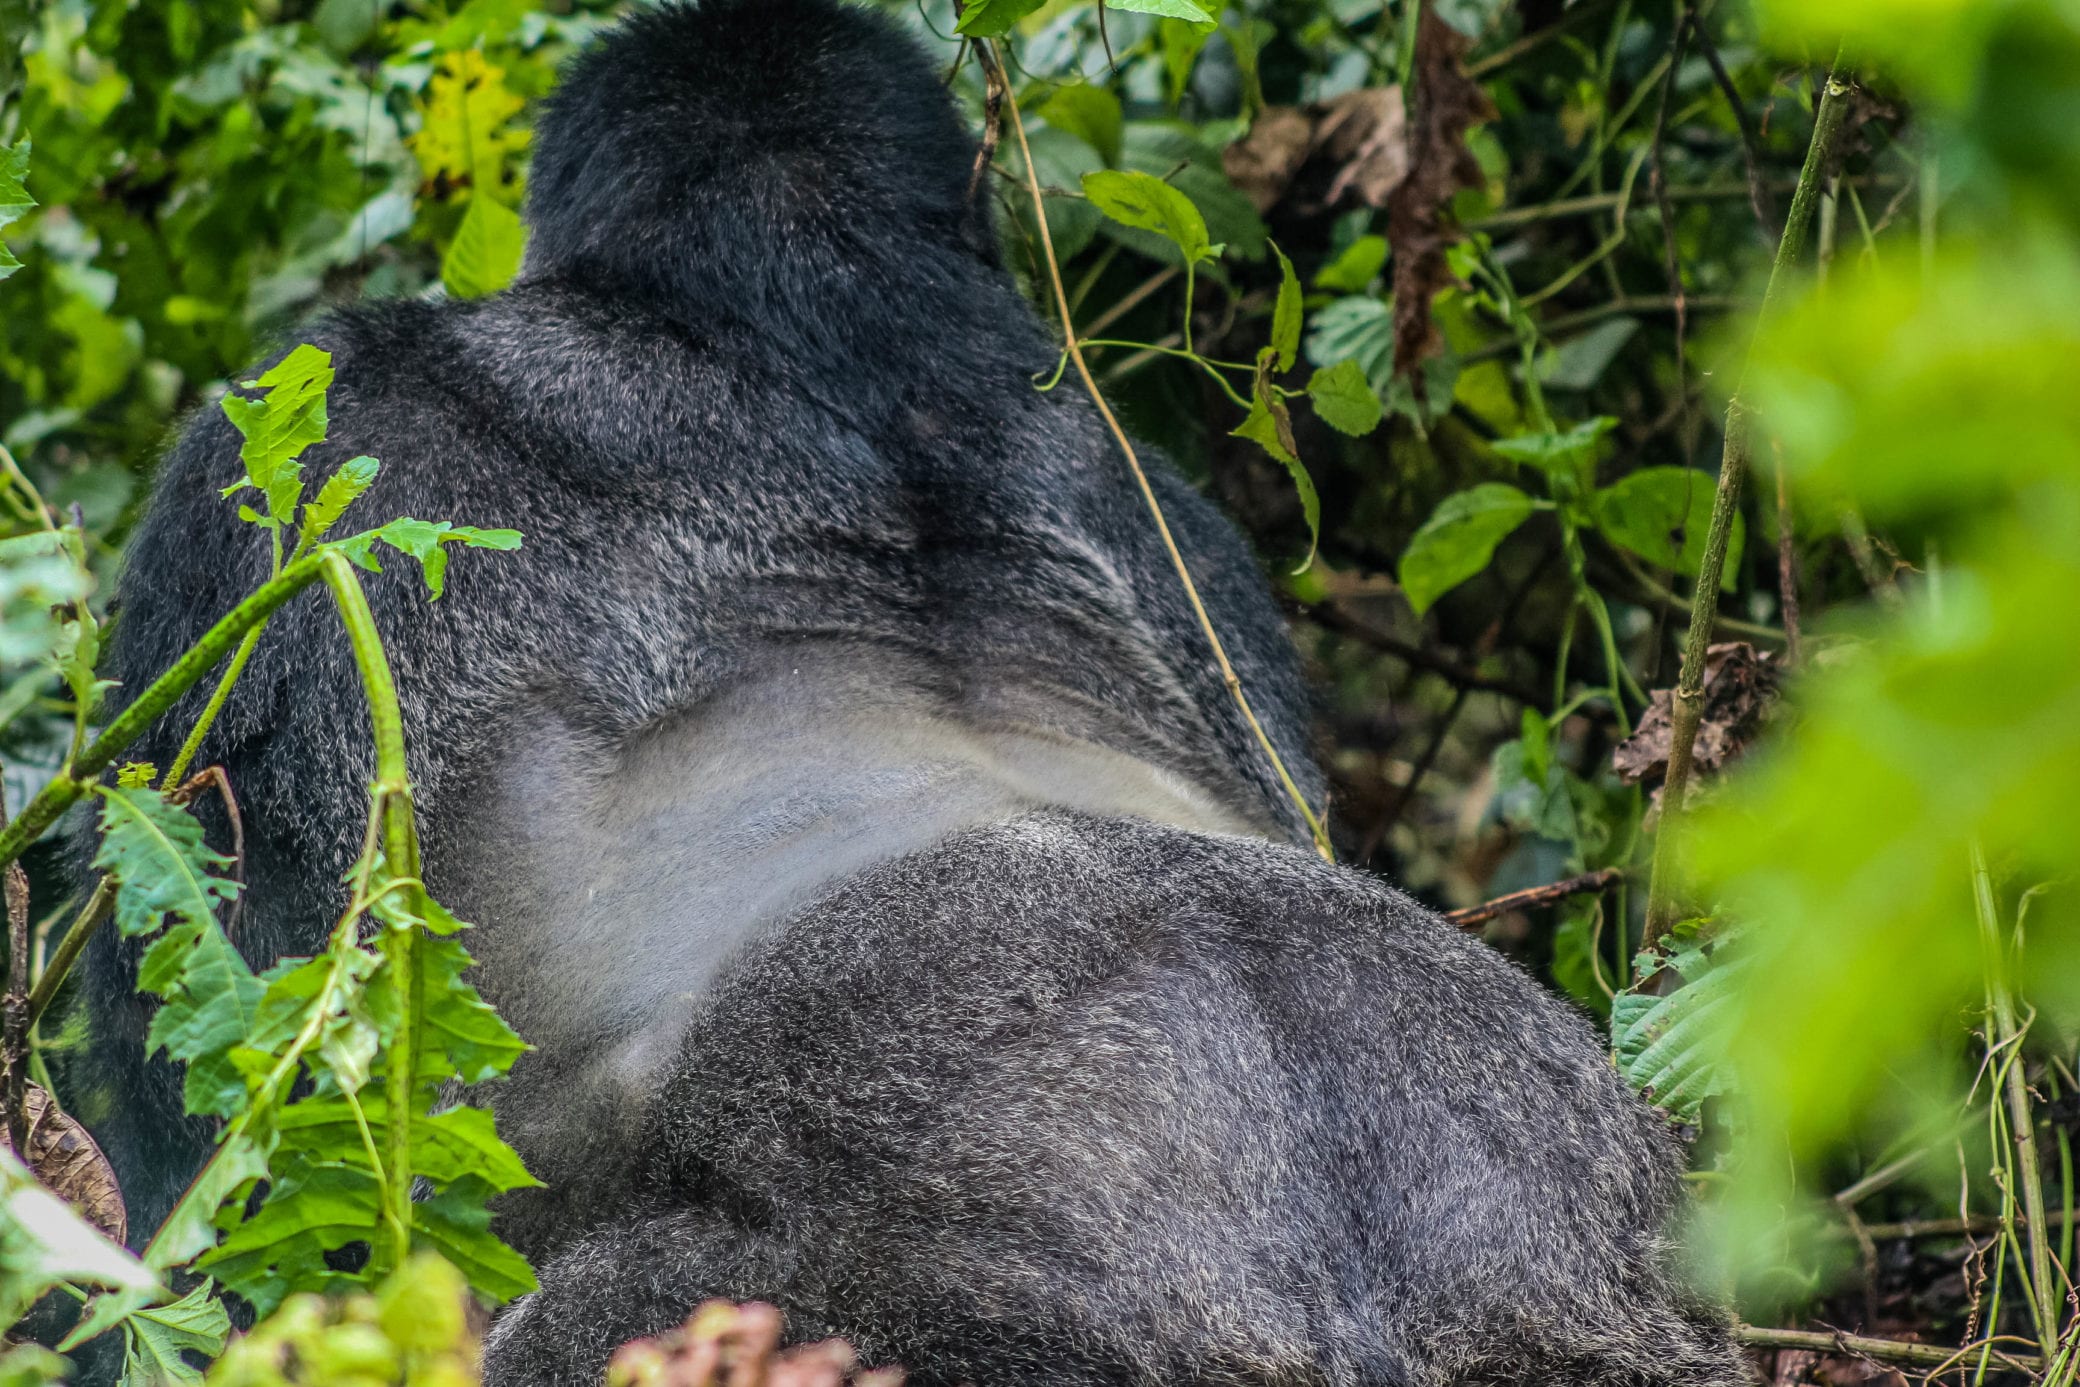 Types of Gorillas in Uganda